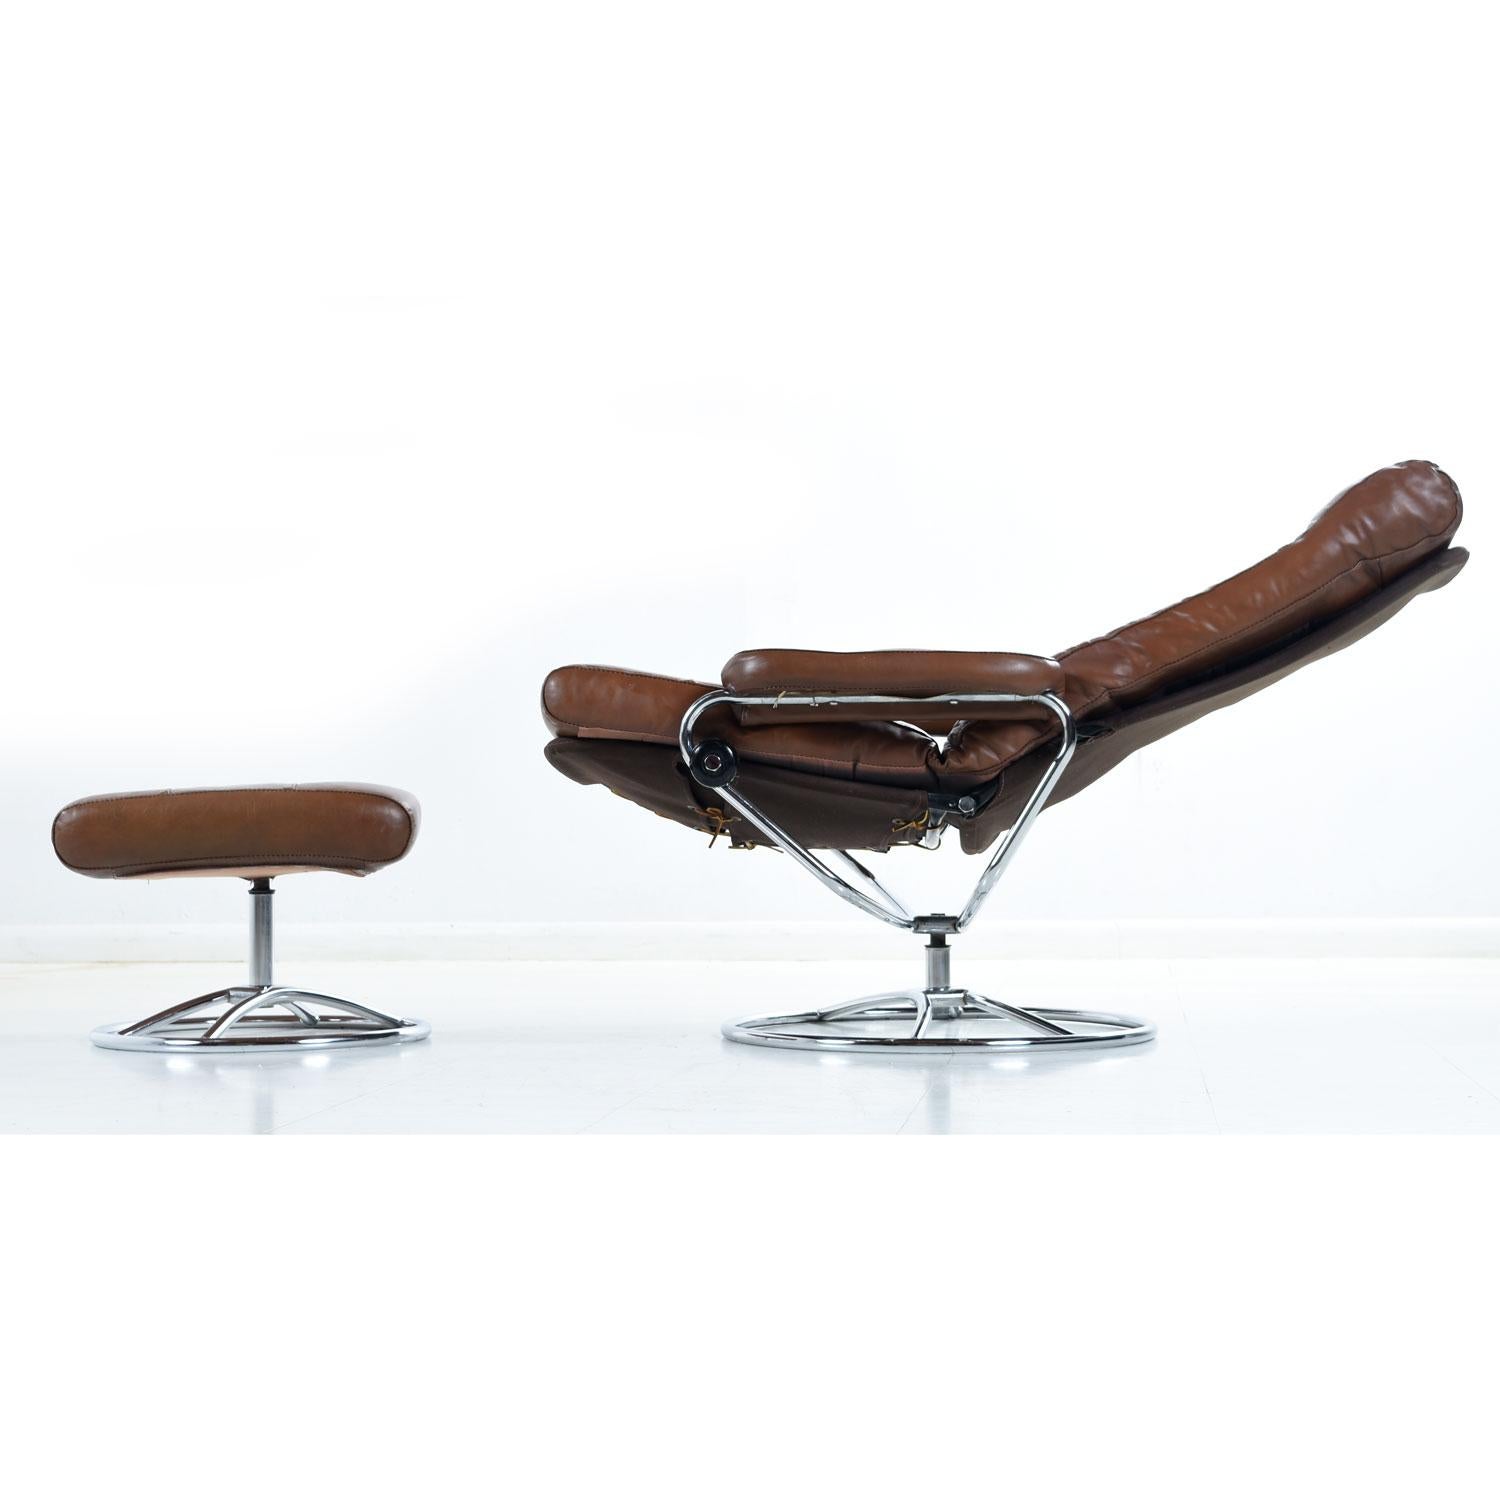 Dieser nicht gekennzeichnete skandinavische Sling-Stuhl wird Ekornes zugeschrieben. Der Stuhl ist mit sattelbraunem Leder gepolstert. Drücken Sie nach hinten:: um den Sessel in den gewünschten Winkel zu bringen:: und drehen Sie den Drehknopf:: um